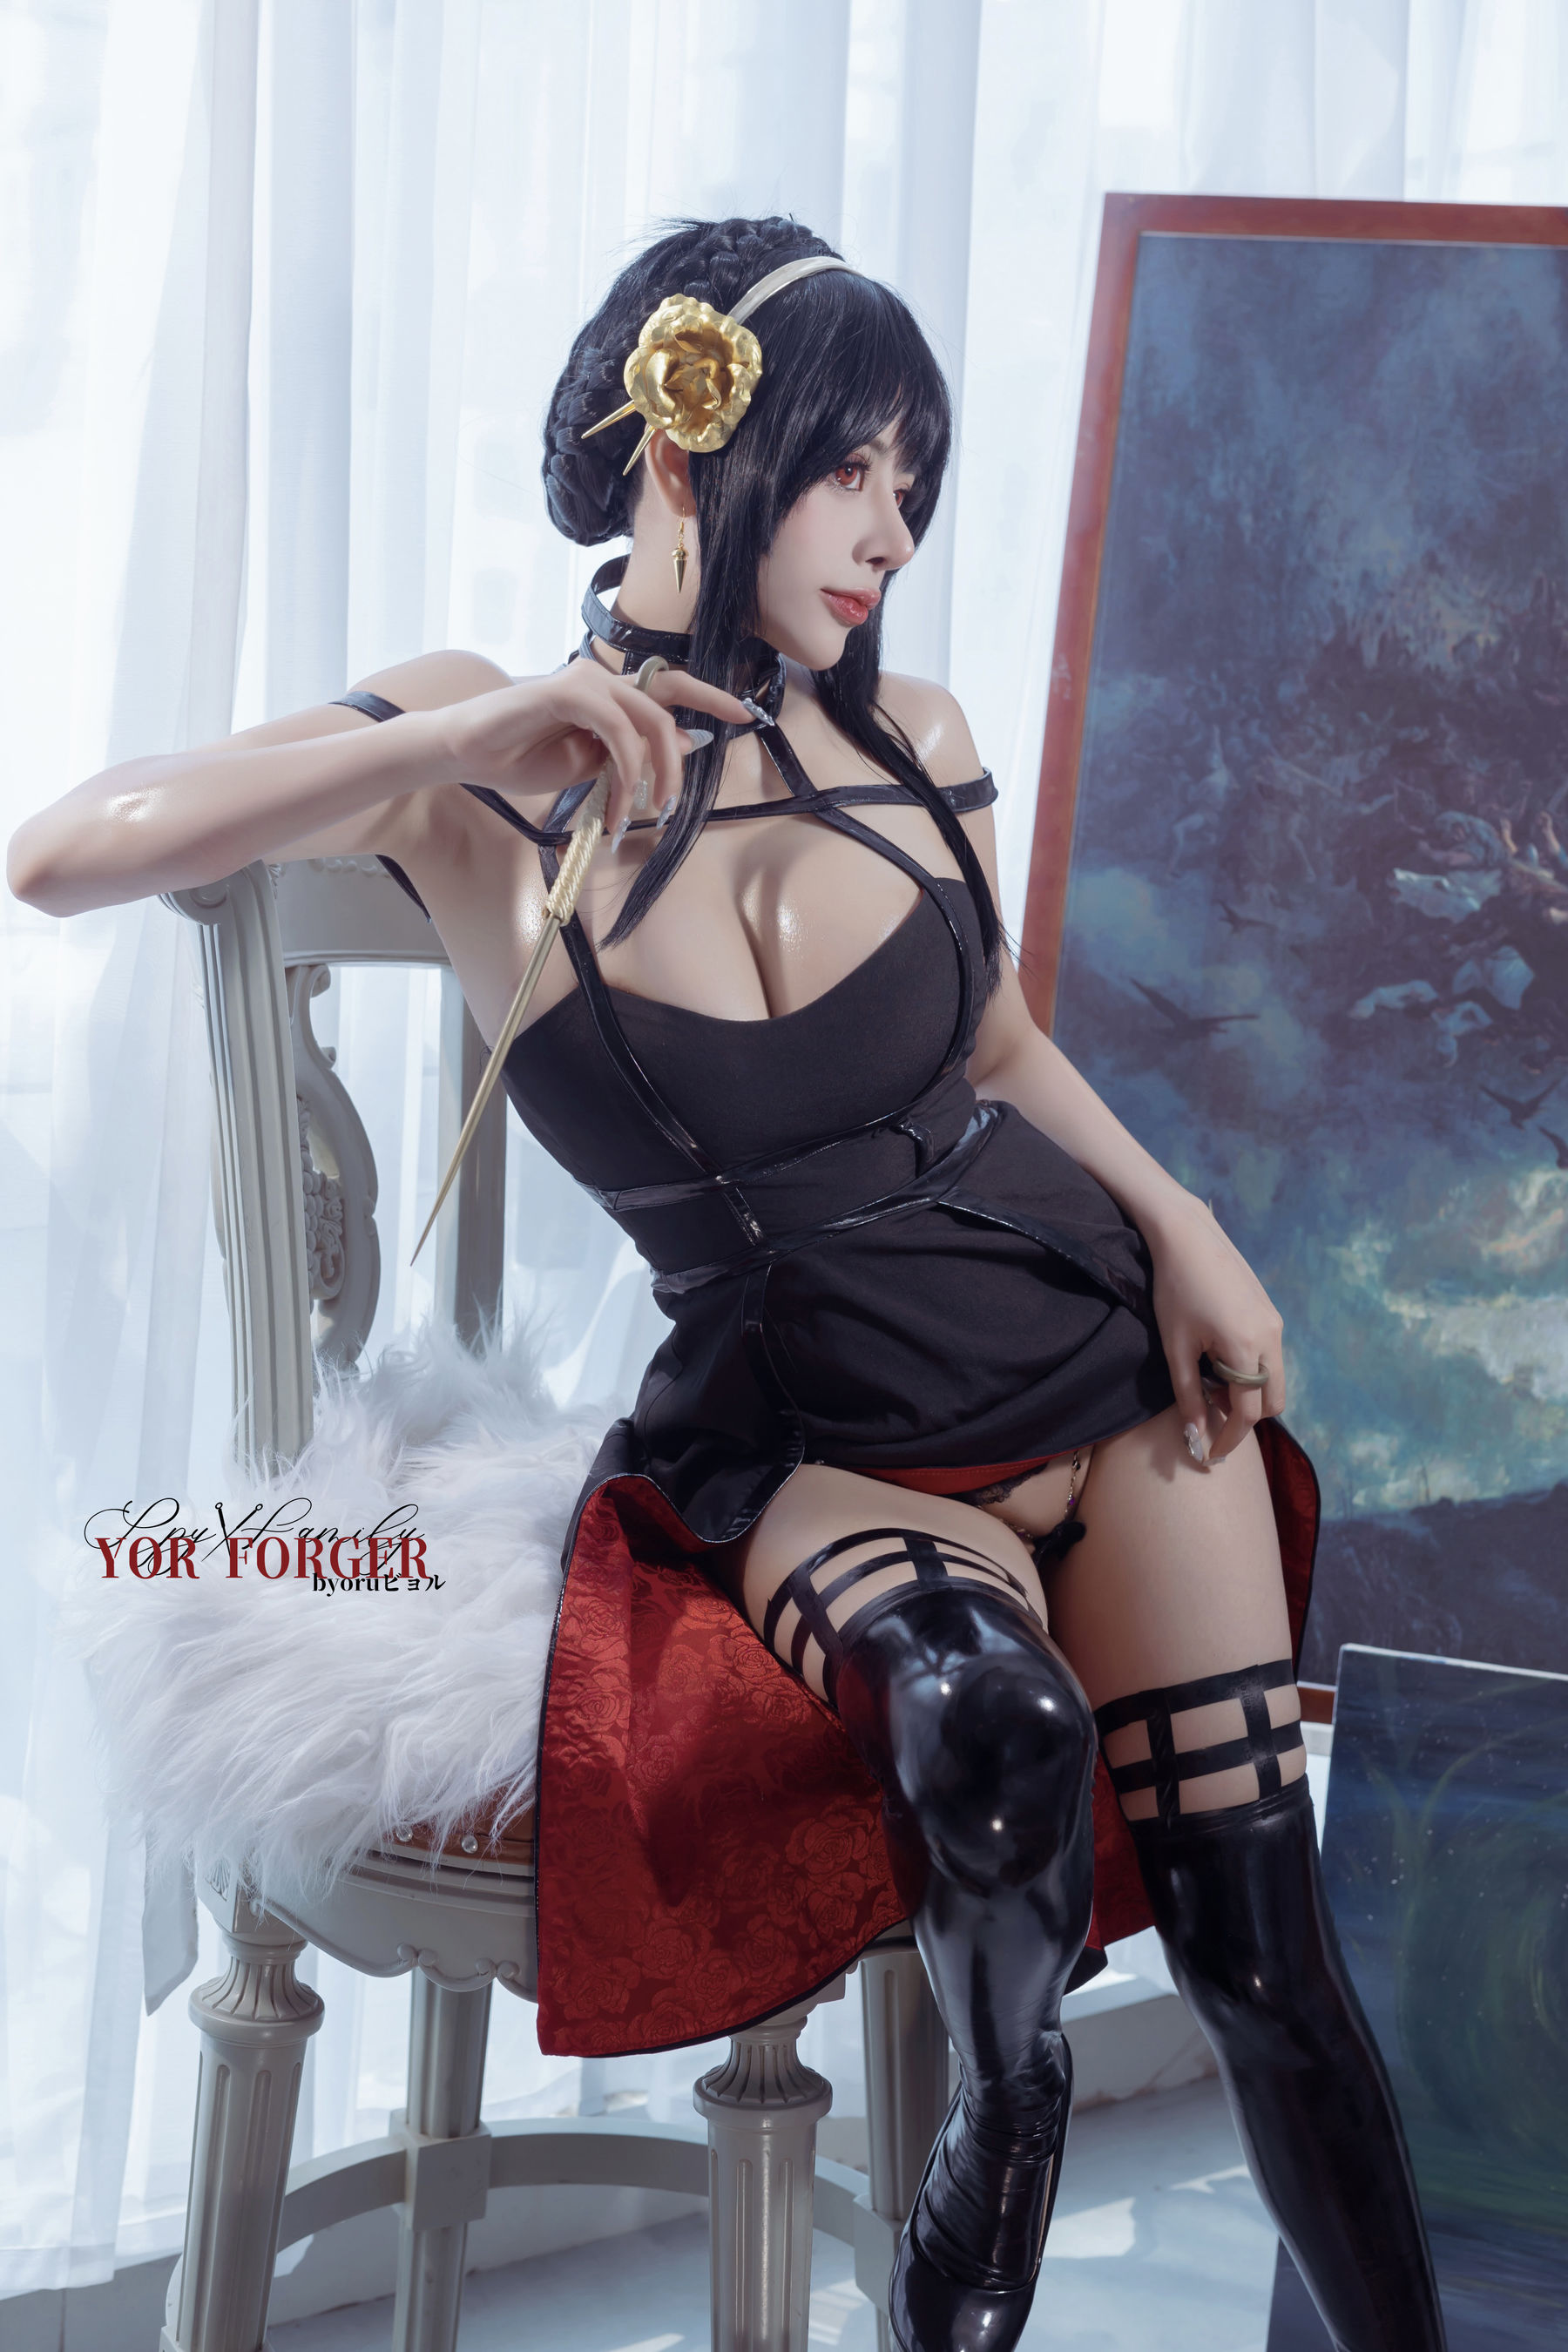 日本性感萝莉Byoru - Yor thorn princess/(30P)